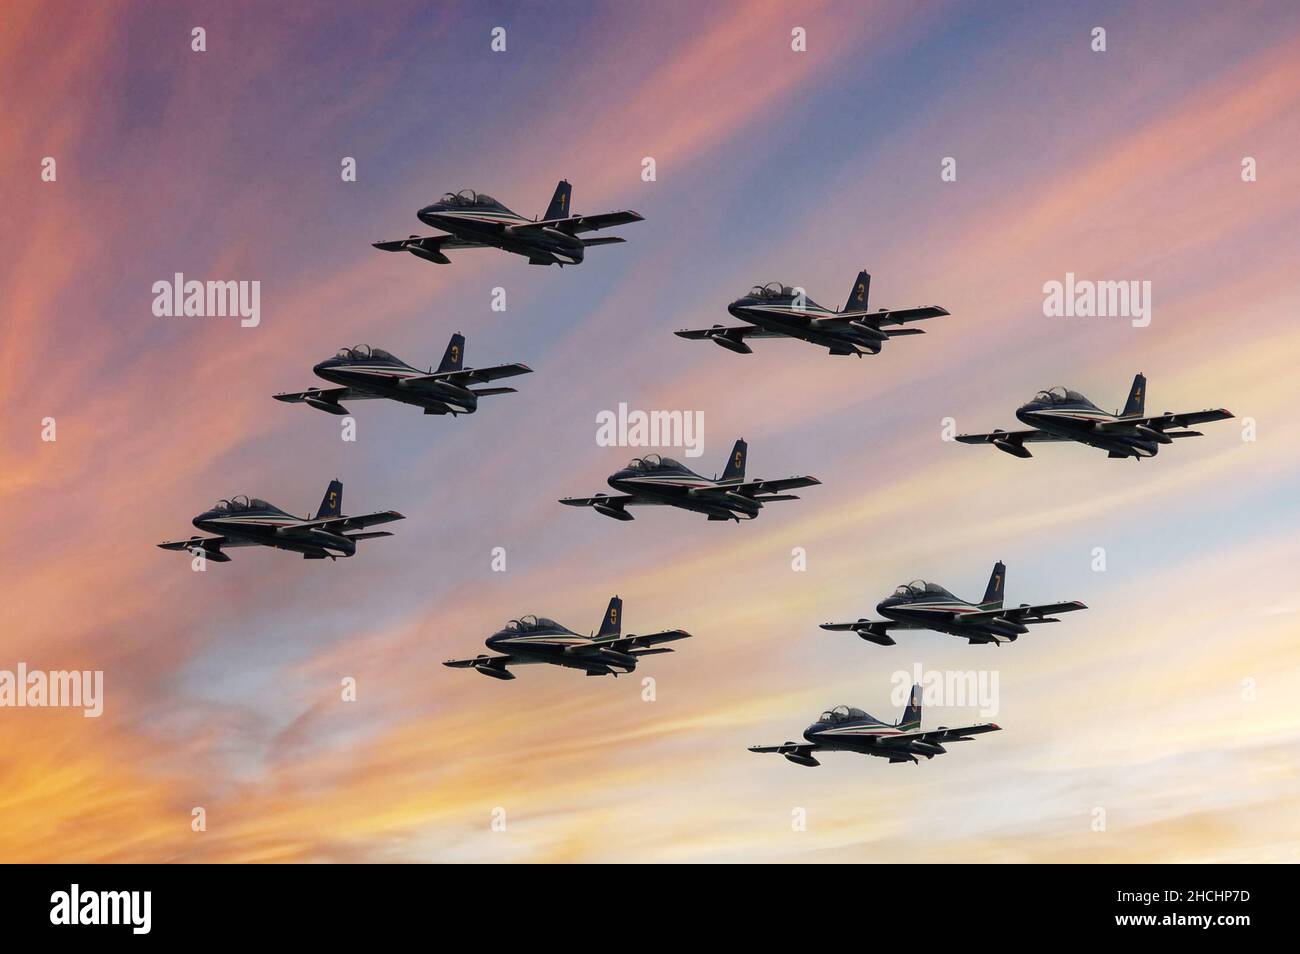 Gruppo Aerobatico di Frecce Tricolori, formazione aerea nazionale italiana durante una mostra Foto Stock